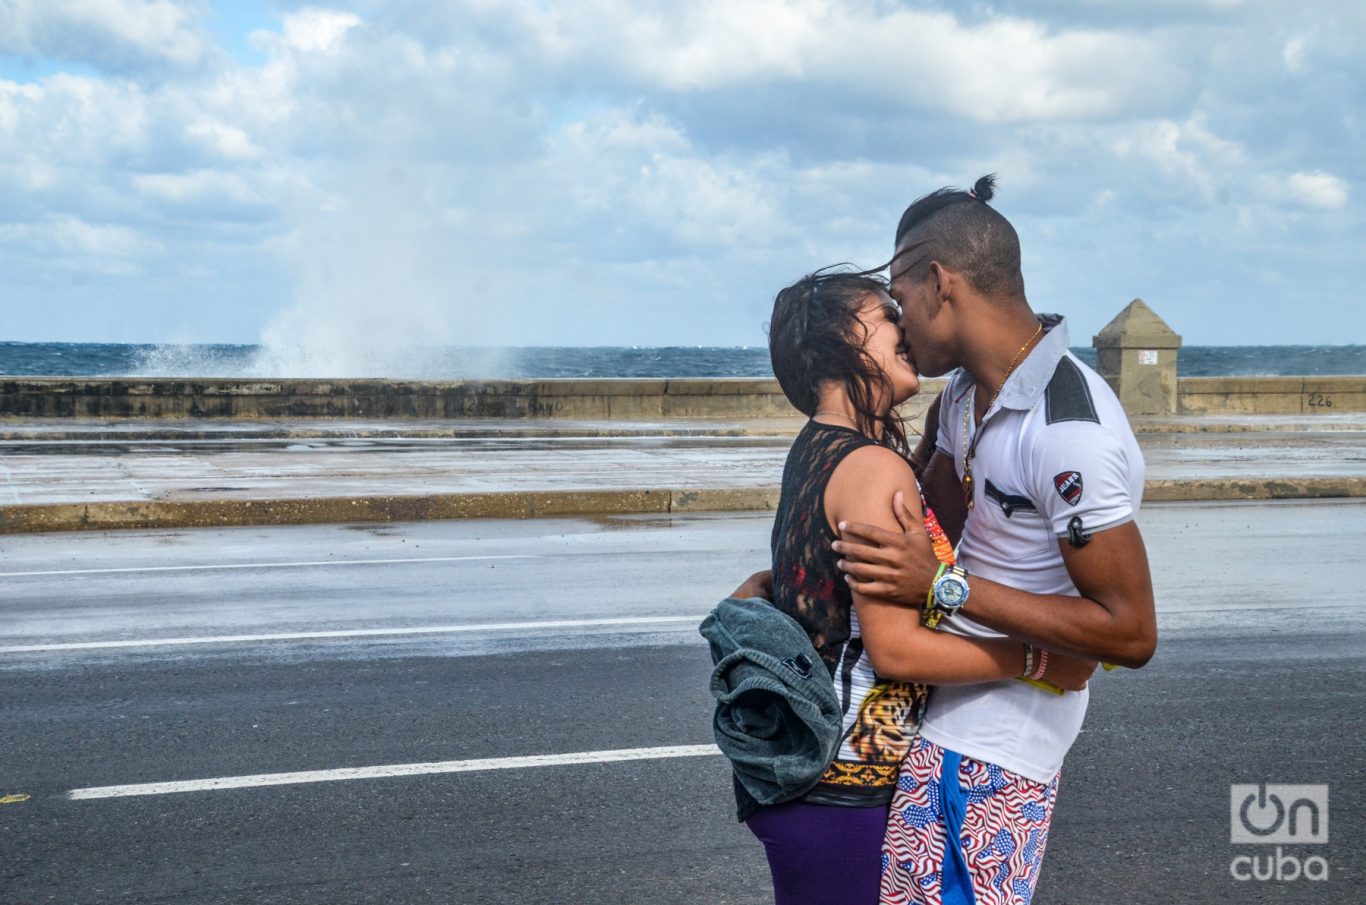 Una pareja de jóvenes frente al Malecón de La Habana. Foto: Kaloian.
